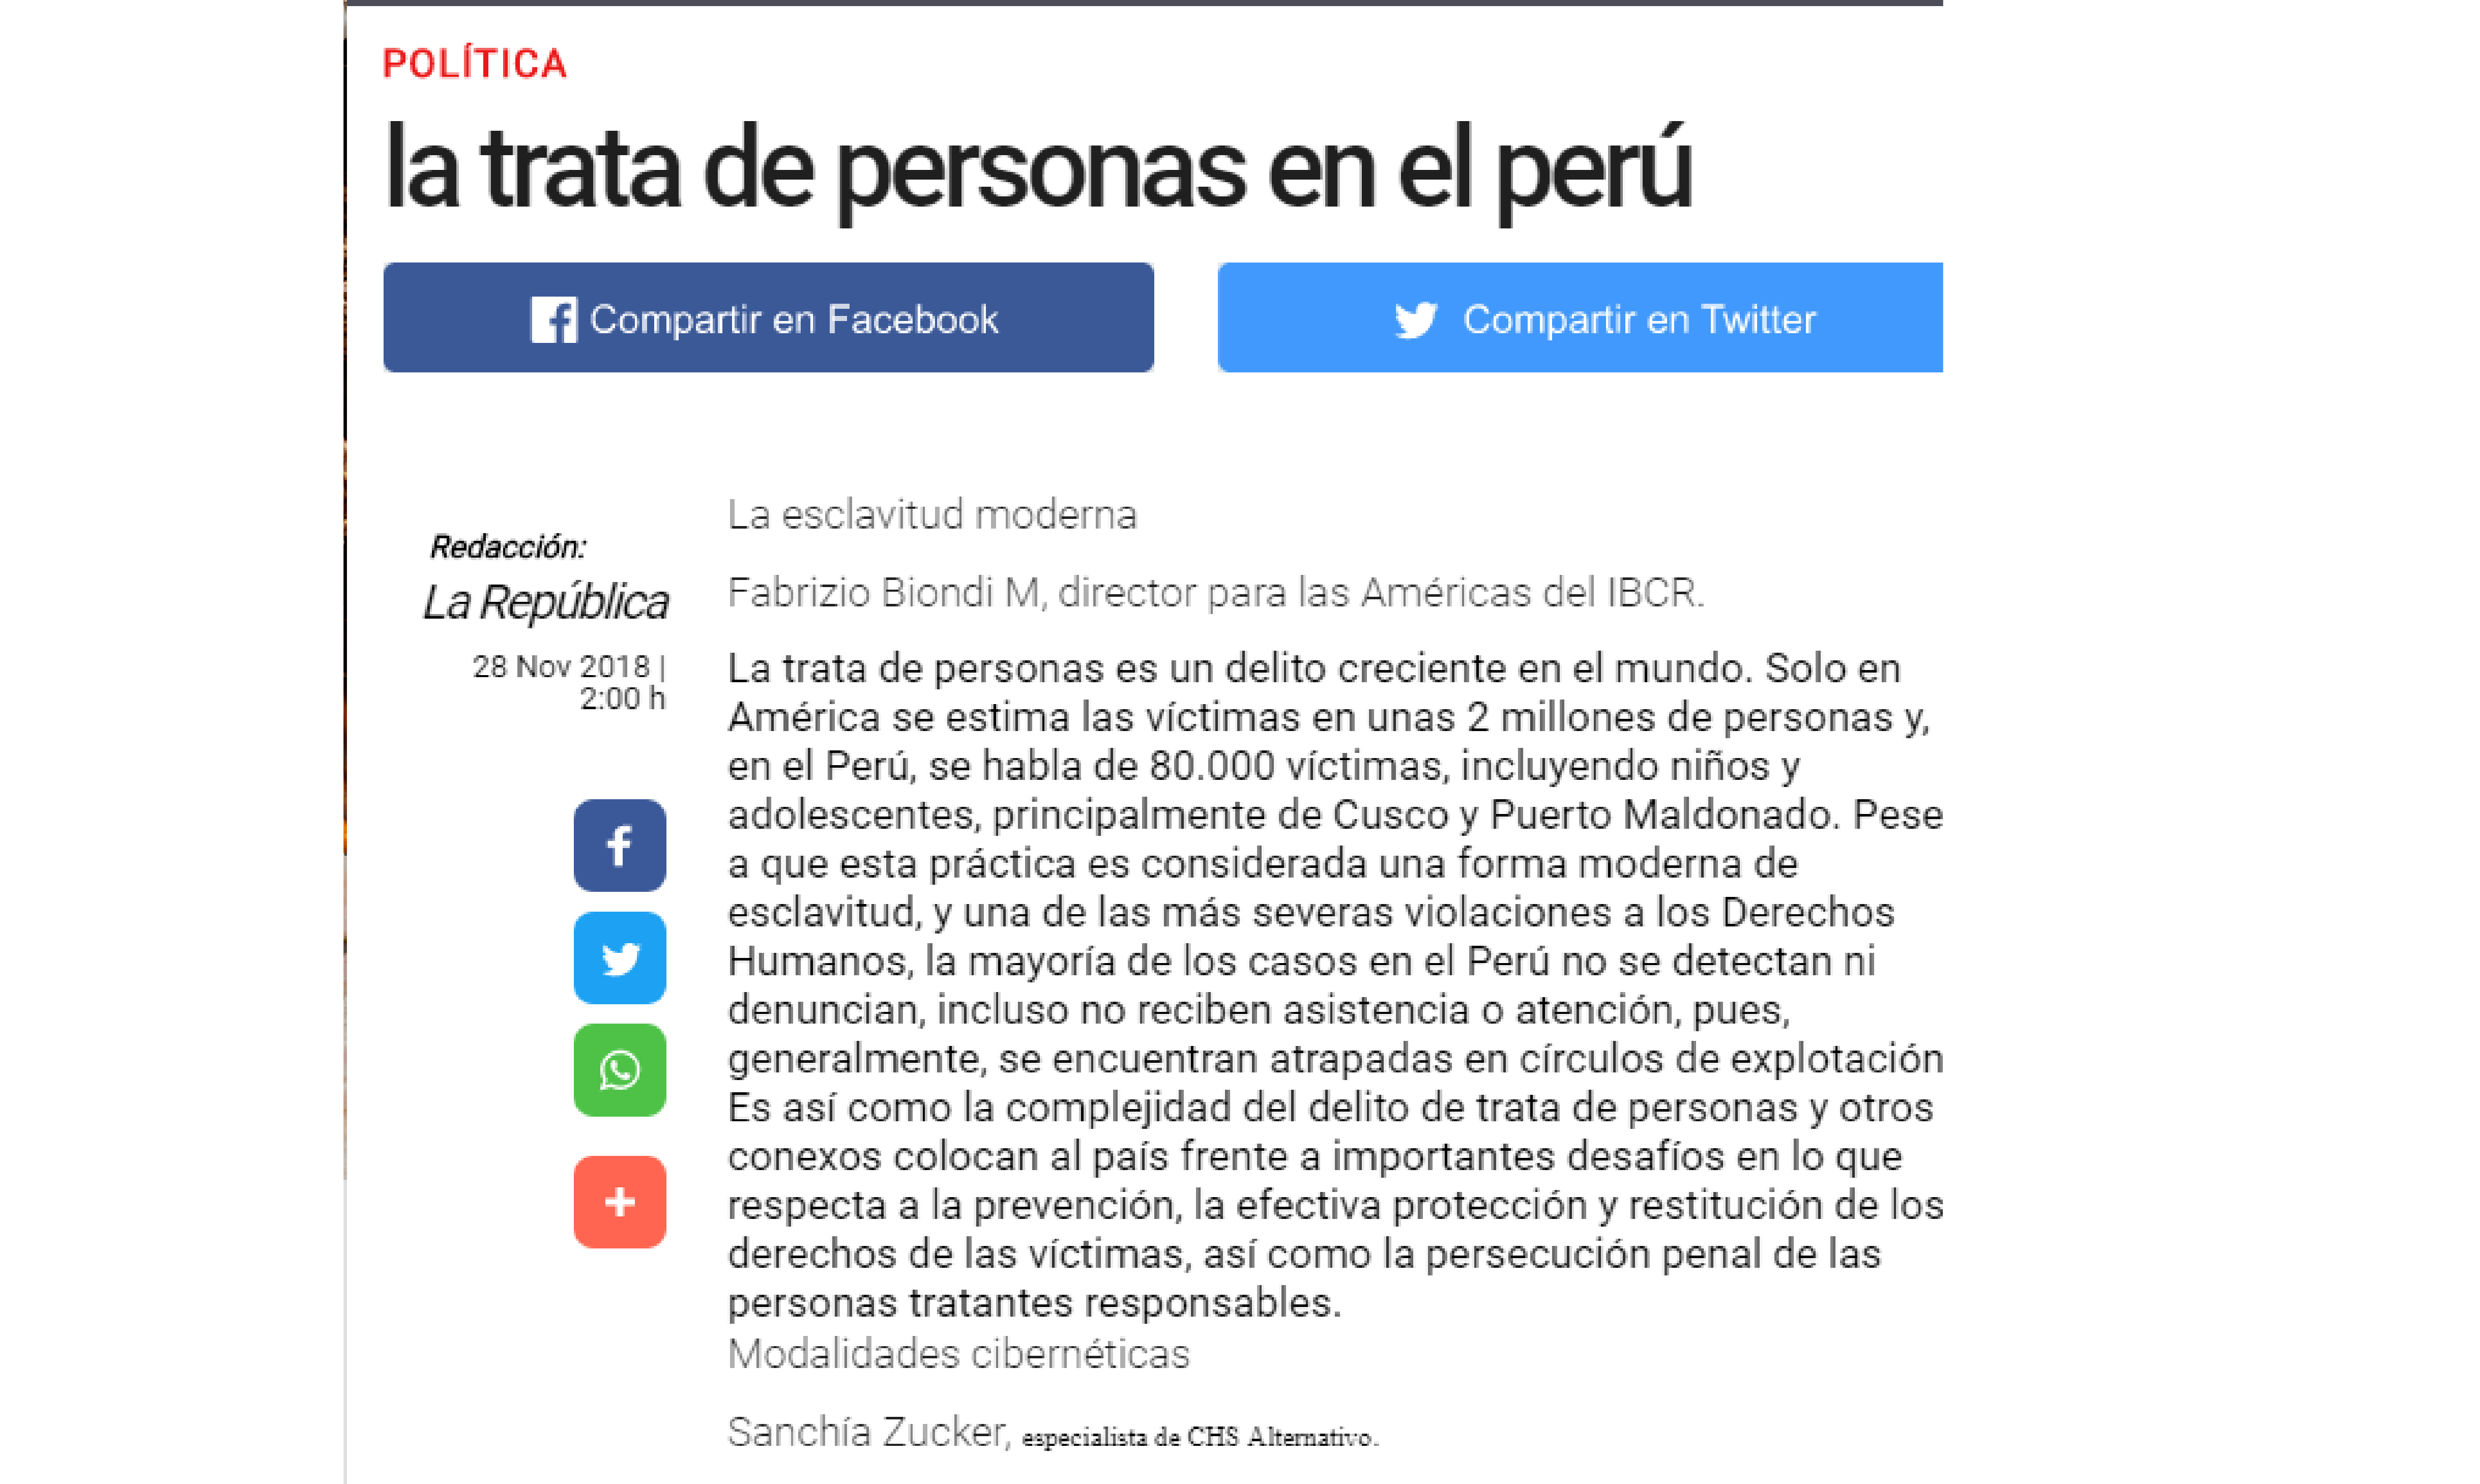 La República: La trata de personas en el Perú